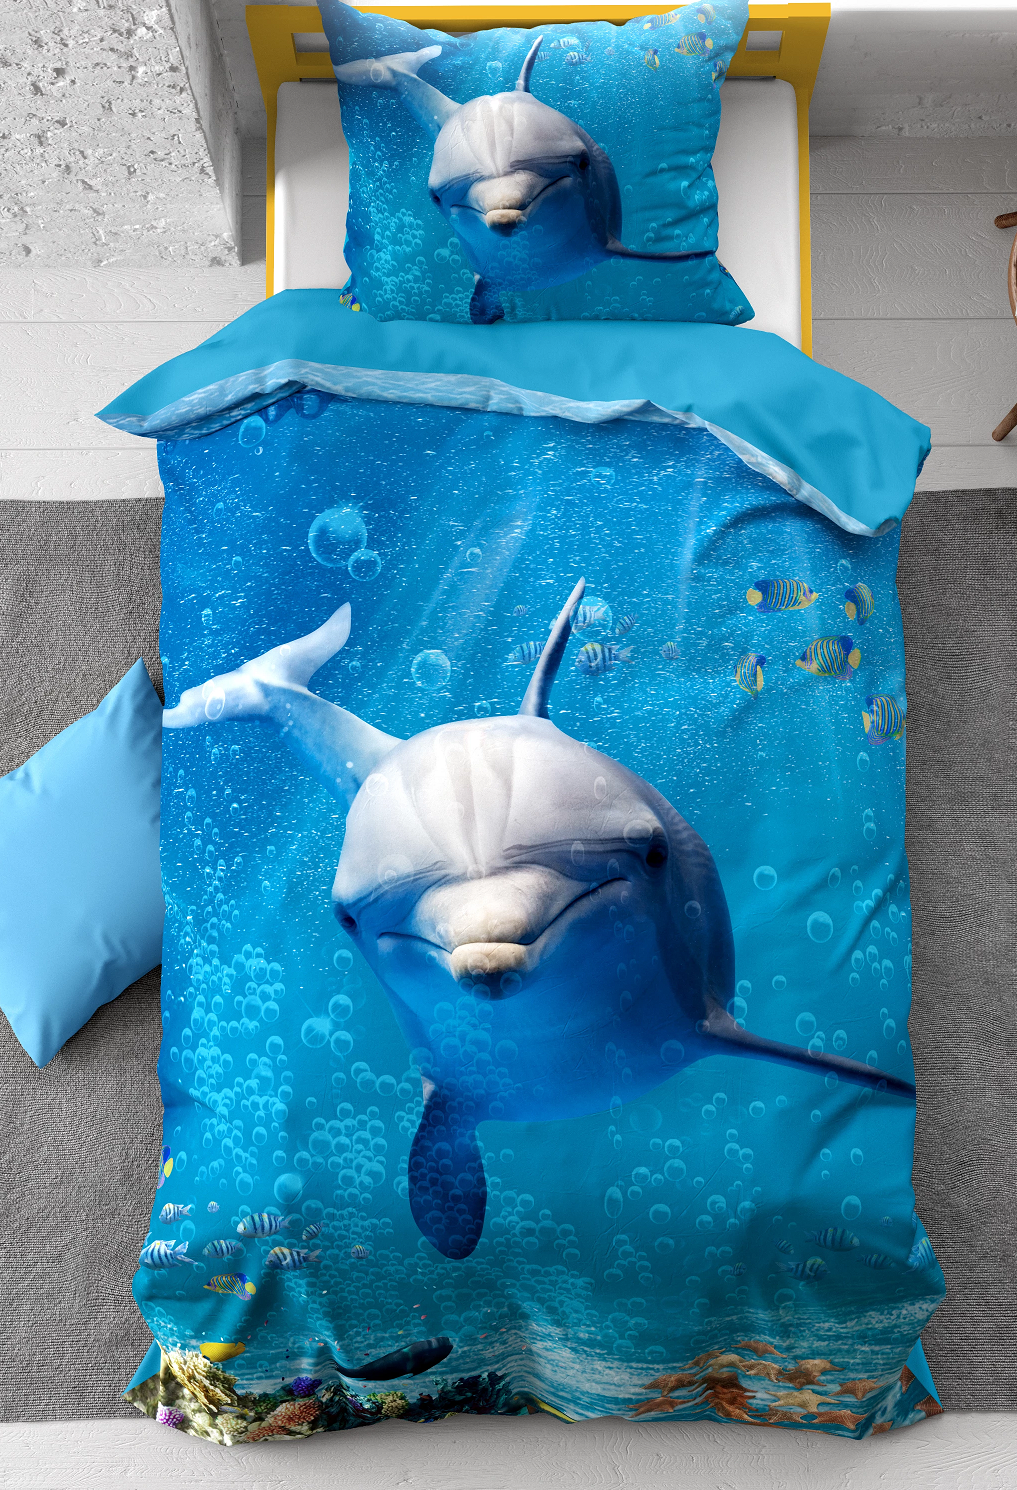 school Onderscheid tentoonstelling 1-persoons kinder dekbedovertrek (dekbed hoes) blauw met dolfijn (dolphin),  tropische vissen, zeesterren en schelpen in de helder blauwe zee (water)  KATOEN eenpersoons140 x 220 cm – Blije Kids